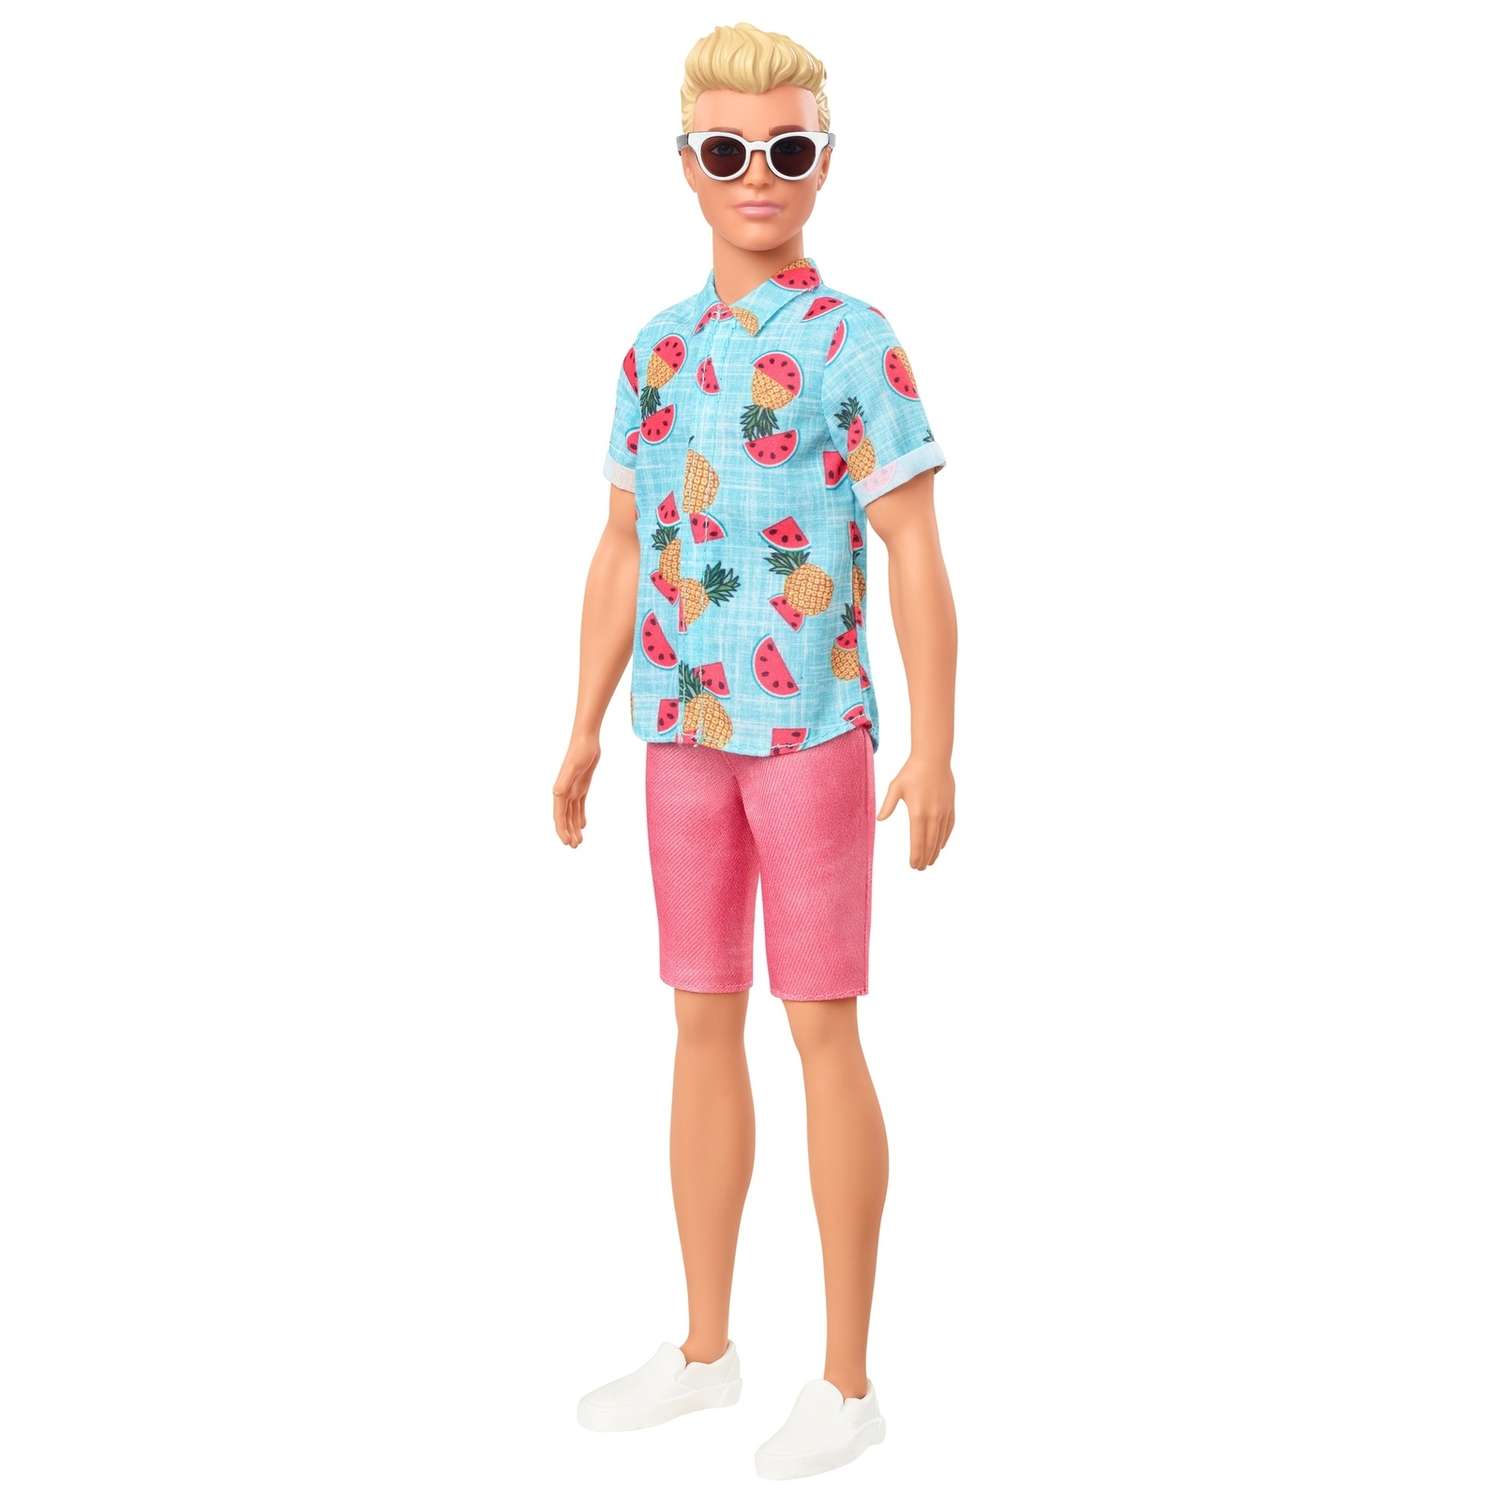 Кукла Barbie Игра с модой Кен со светлыми волосами в голубой рубашке с тропическим принтом GHW68 DWK44 - фото 1